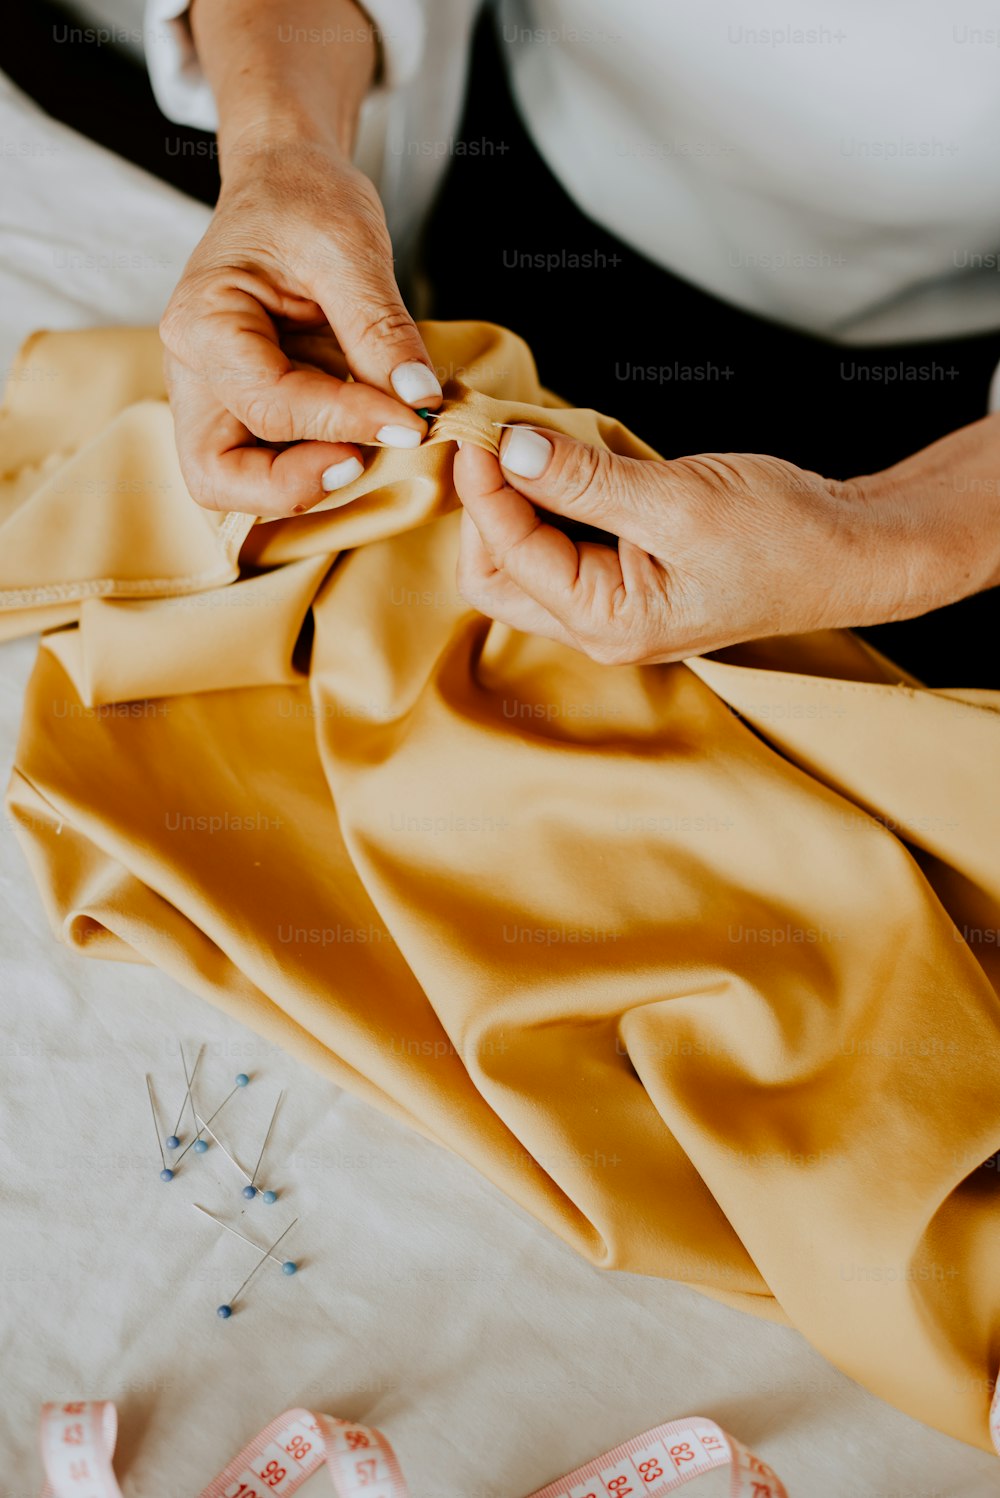 Una donna sta cucendo un panno giallo su una macchina da cucire